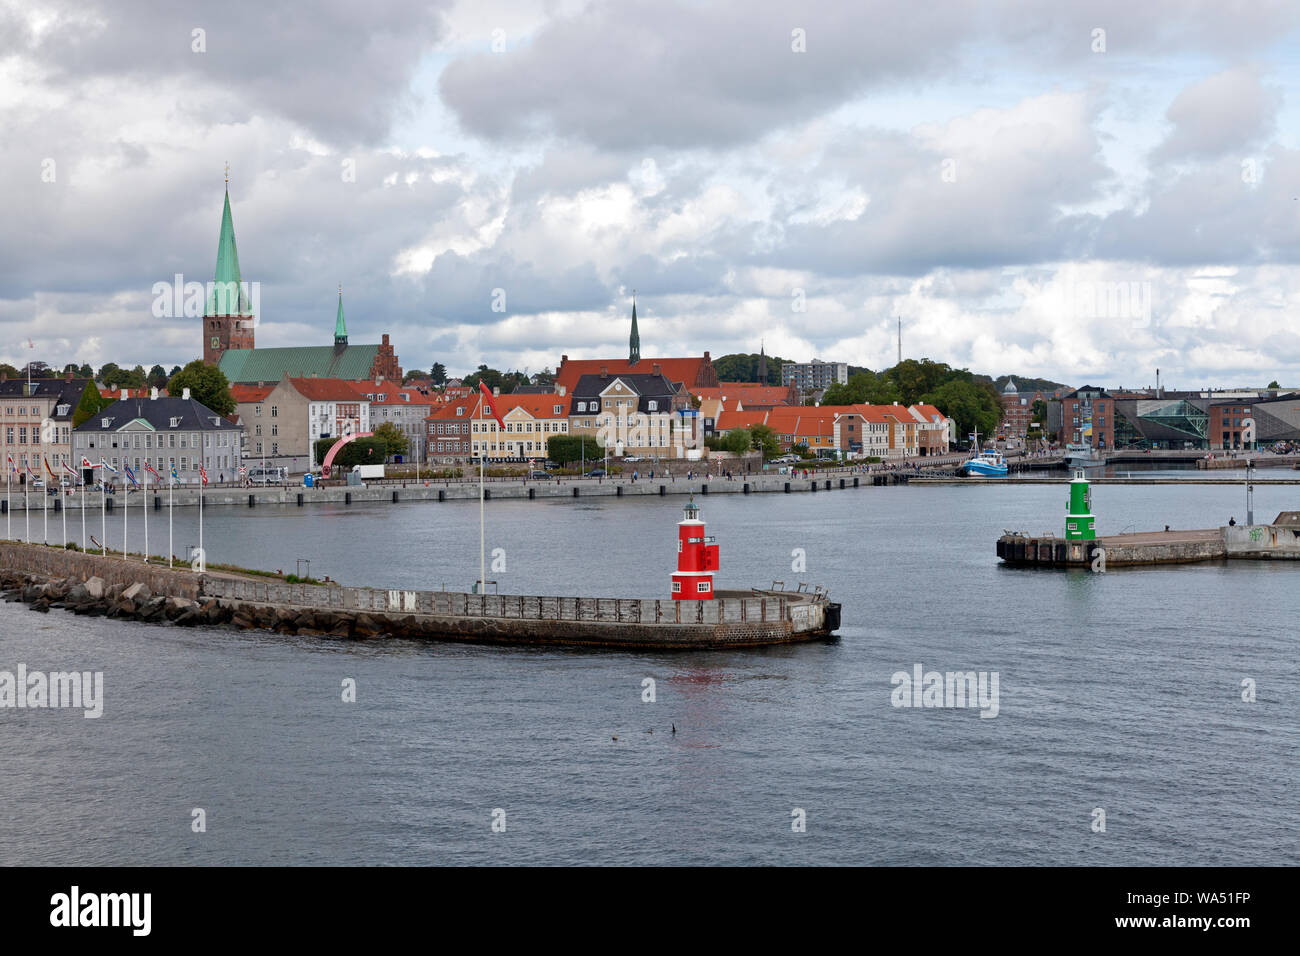 Delle luci del porto ad ingresso a Elsinore / Helsingør porto e vista della città. Sct. Cattedrale di Olai sinistra - Havnegade - il cantiere di Cultura a destra. Foto Stock